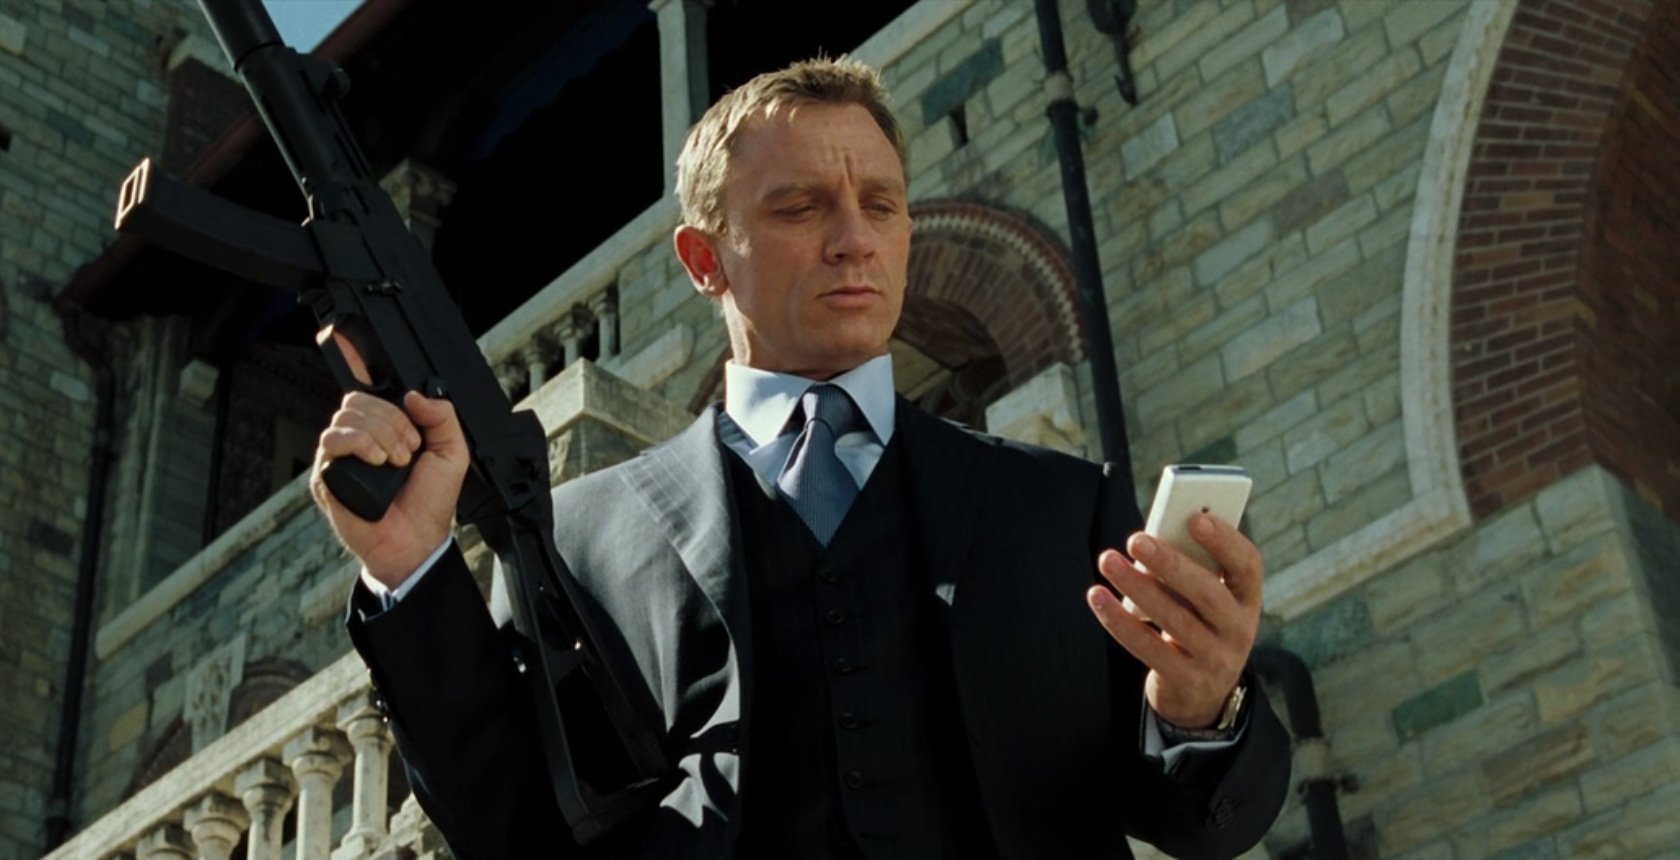 Điệp viên 007 trông hào hoa thế thôi nhưng là sát nhân máu lạnh thực thụ